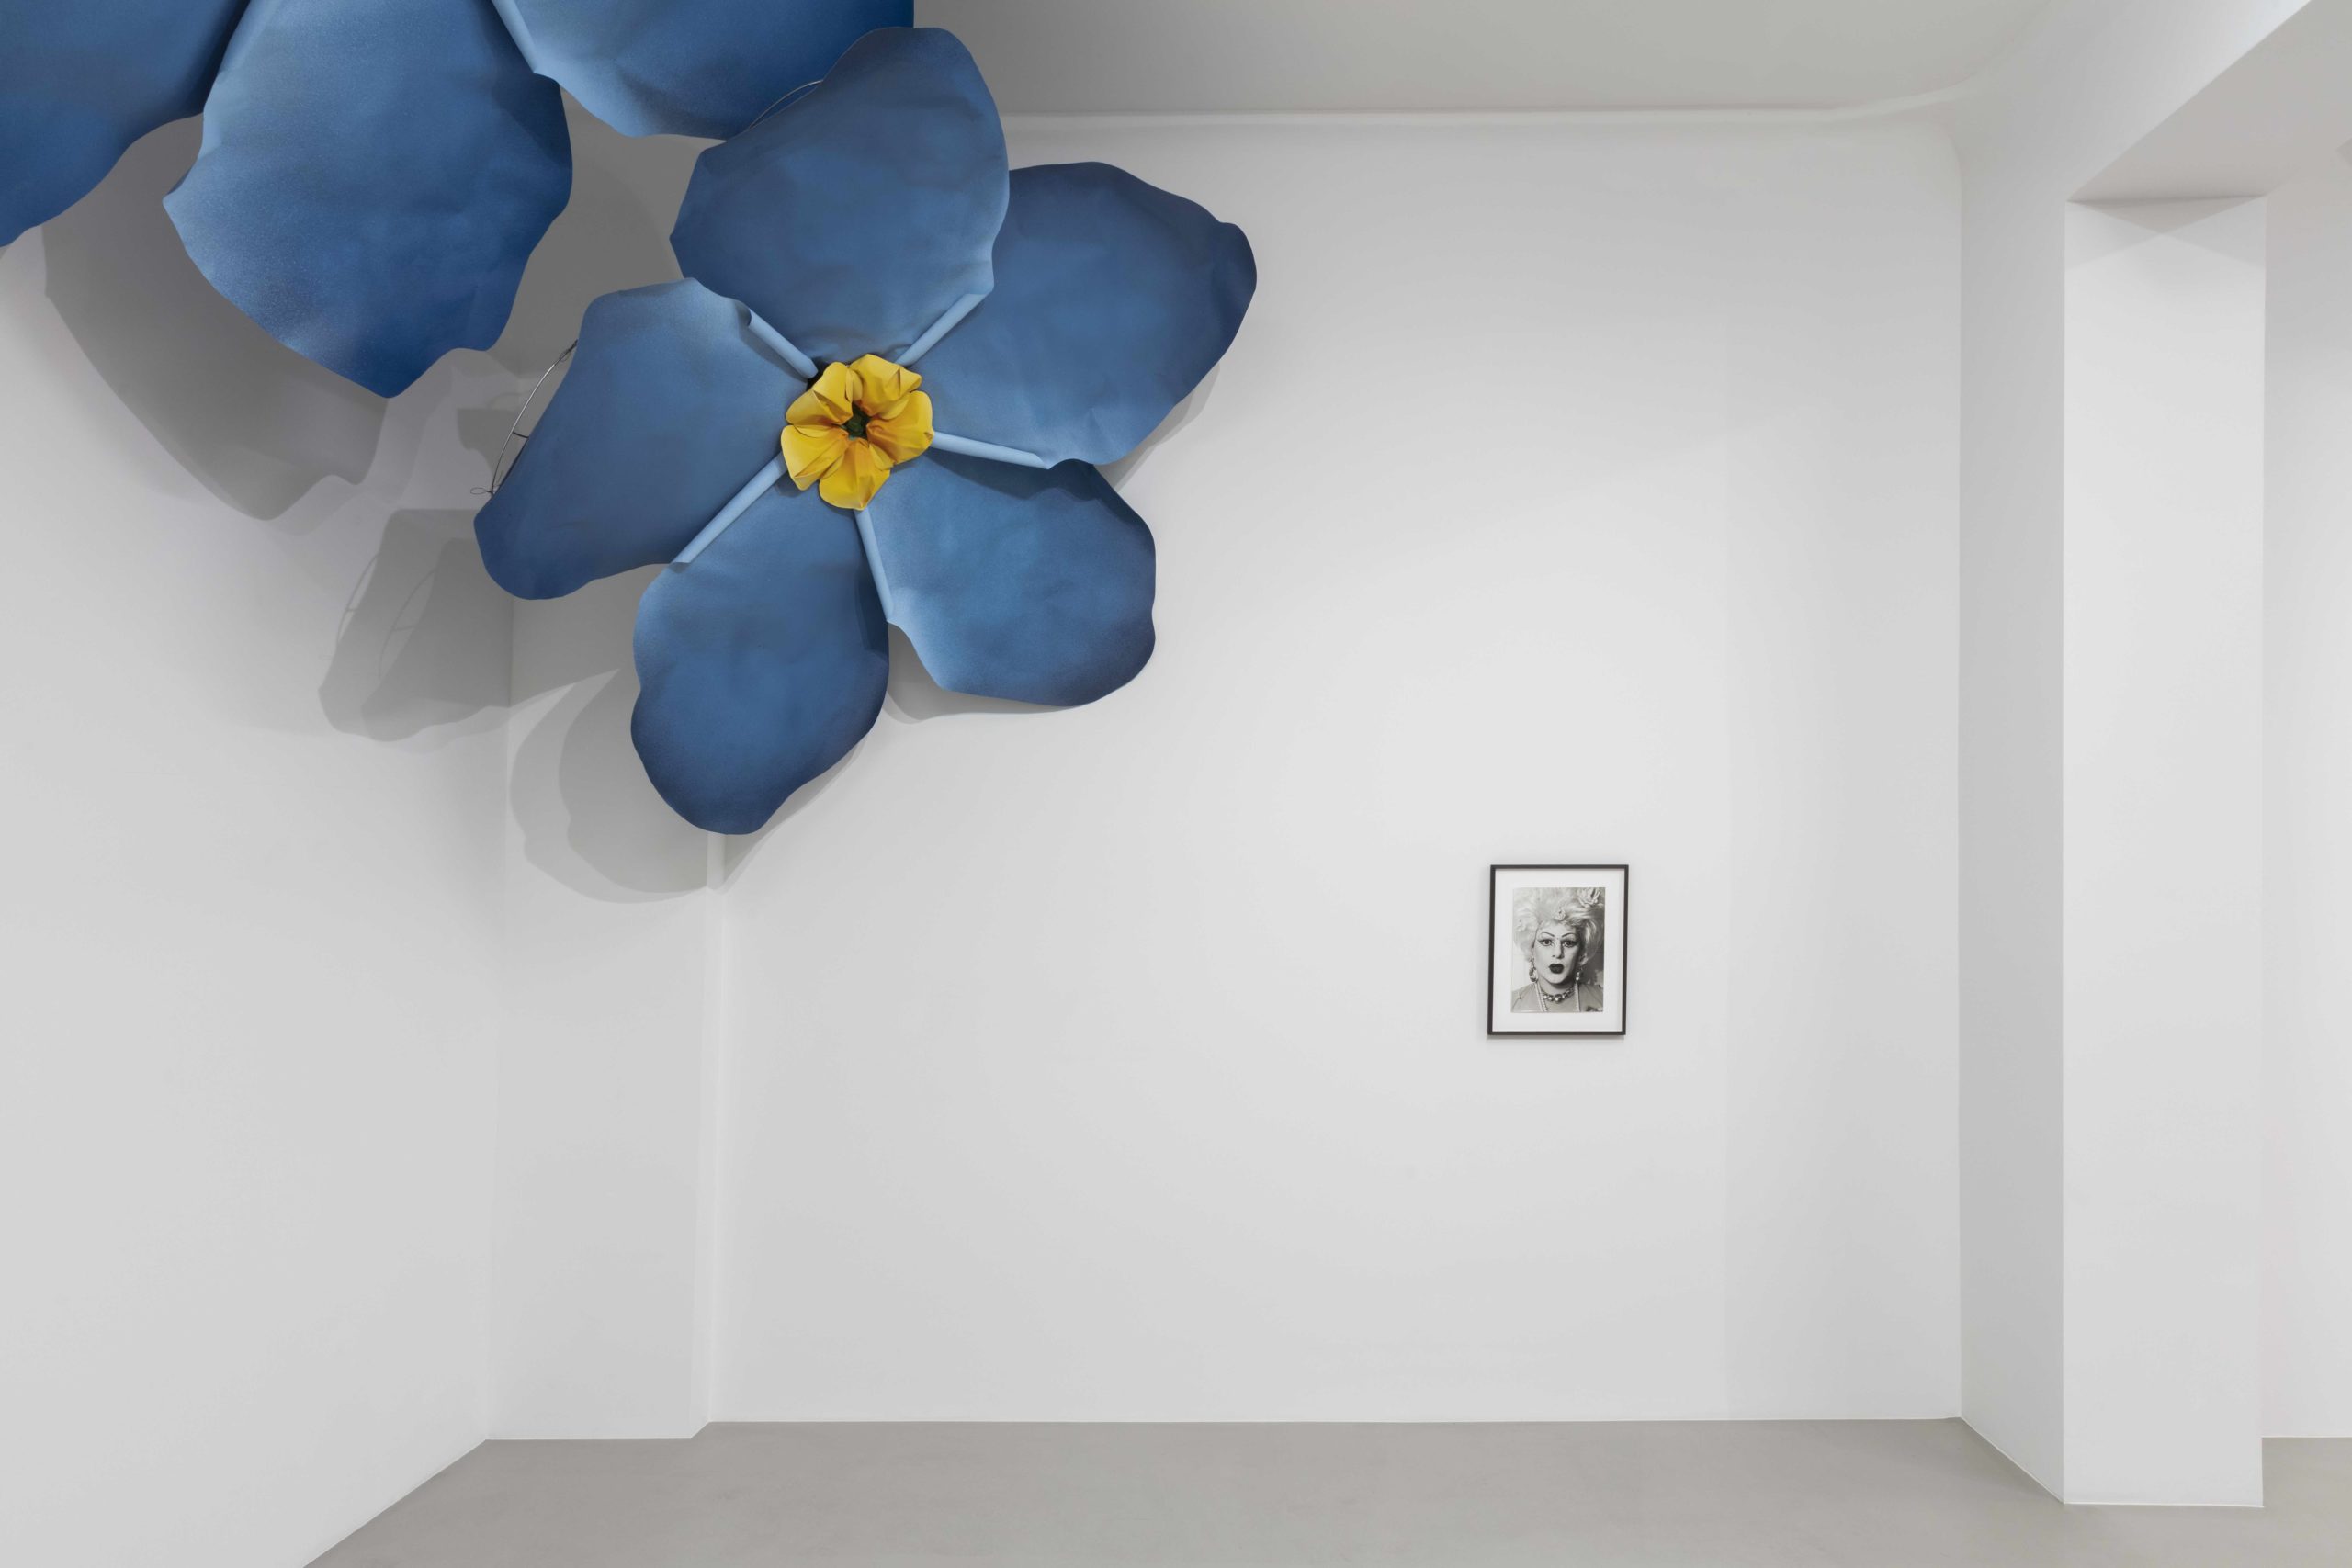 Das Künstler-Duo Petrit Halilaj & Alvaro Urbano sind bekannt für ihre großen Papier-Blüten. Daneben hängt ein Porträt, aufgenommen von Annette Frick. Foto: Andrea Rossetti/ Courtesy of the artists and ChertLüdde